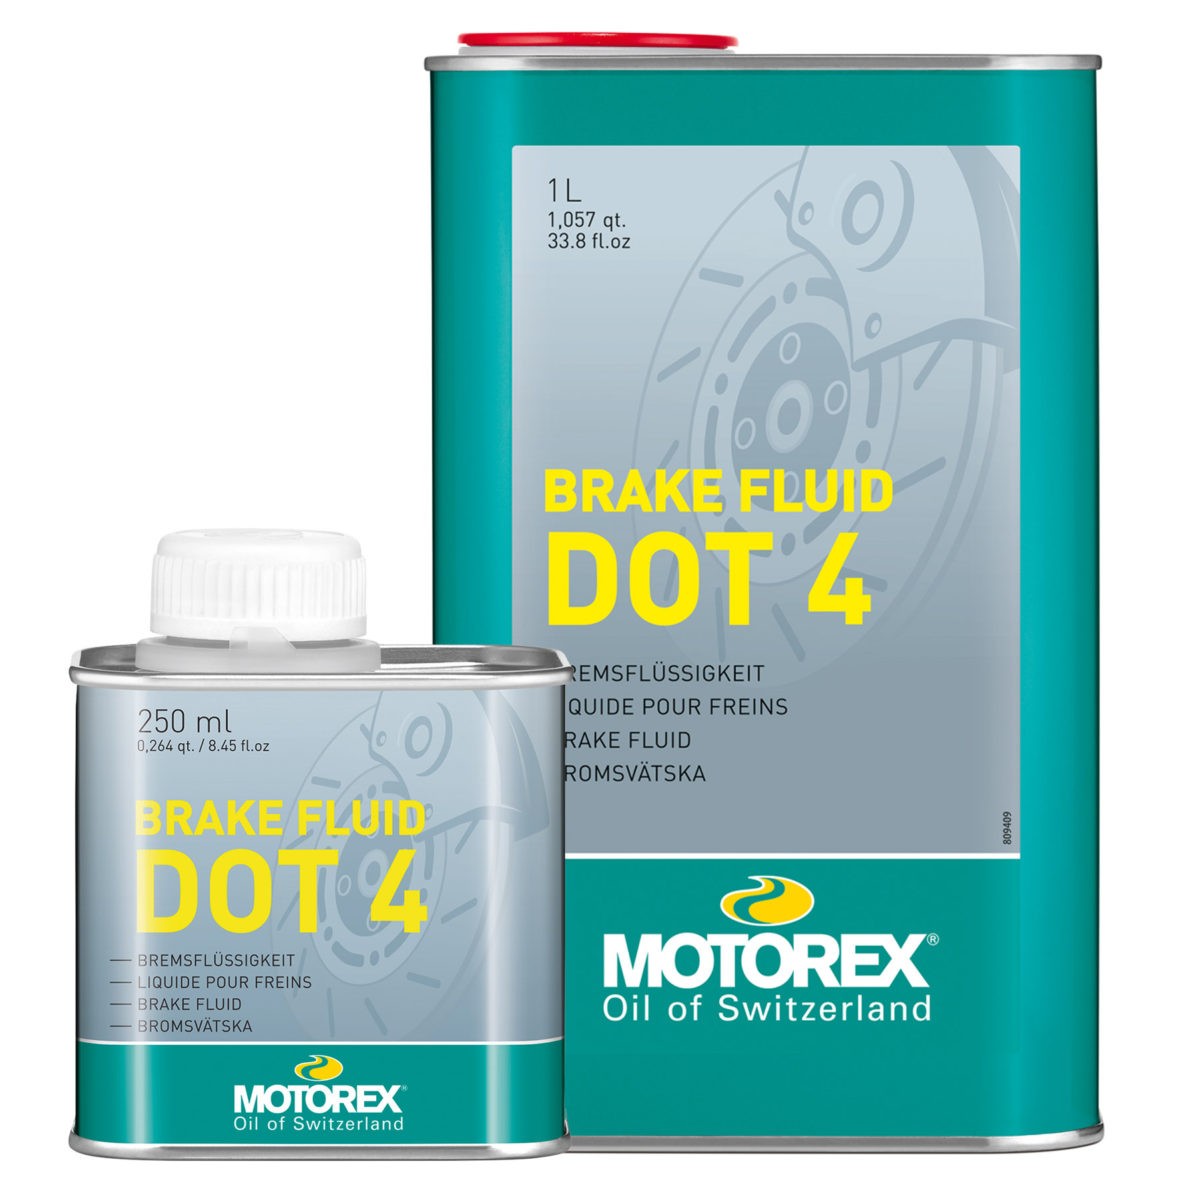 DUCATI GTL Bremsflüssigkeit 1l MOTOREX DOT 4, DOT 4 7611197190417